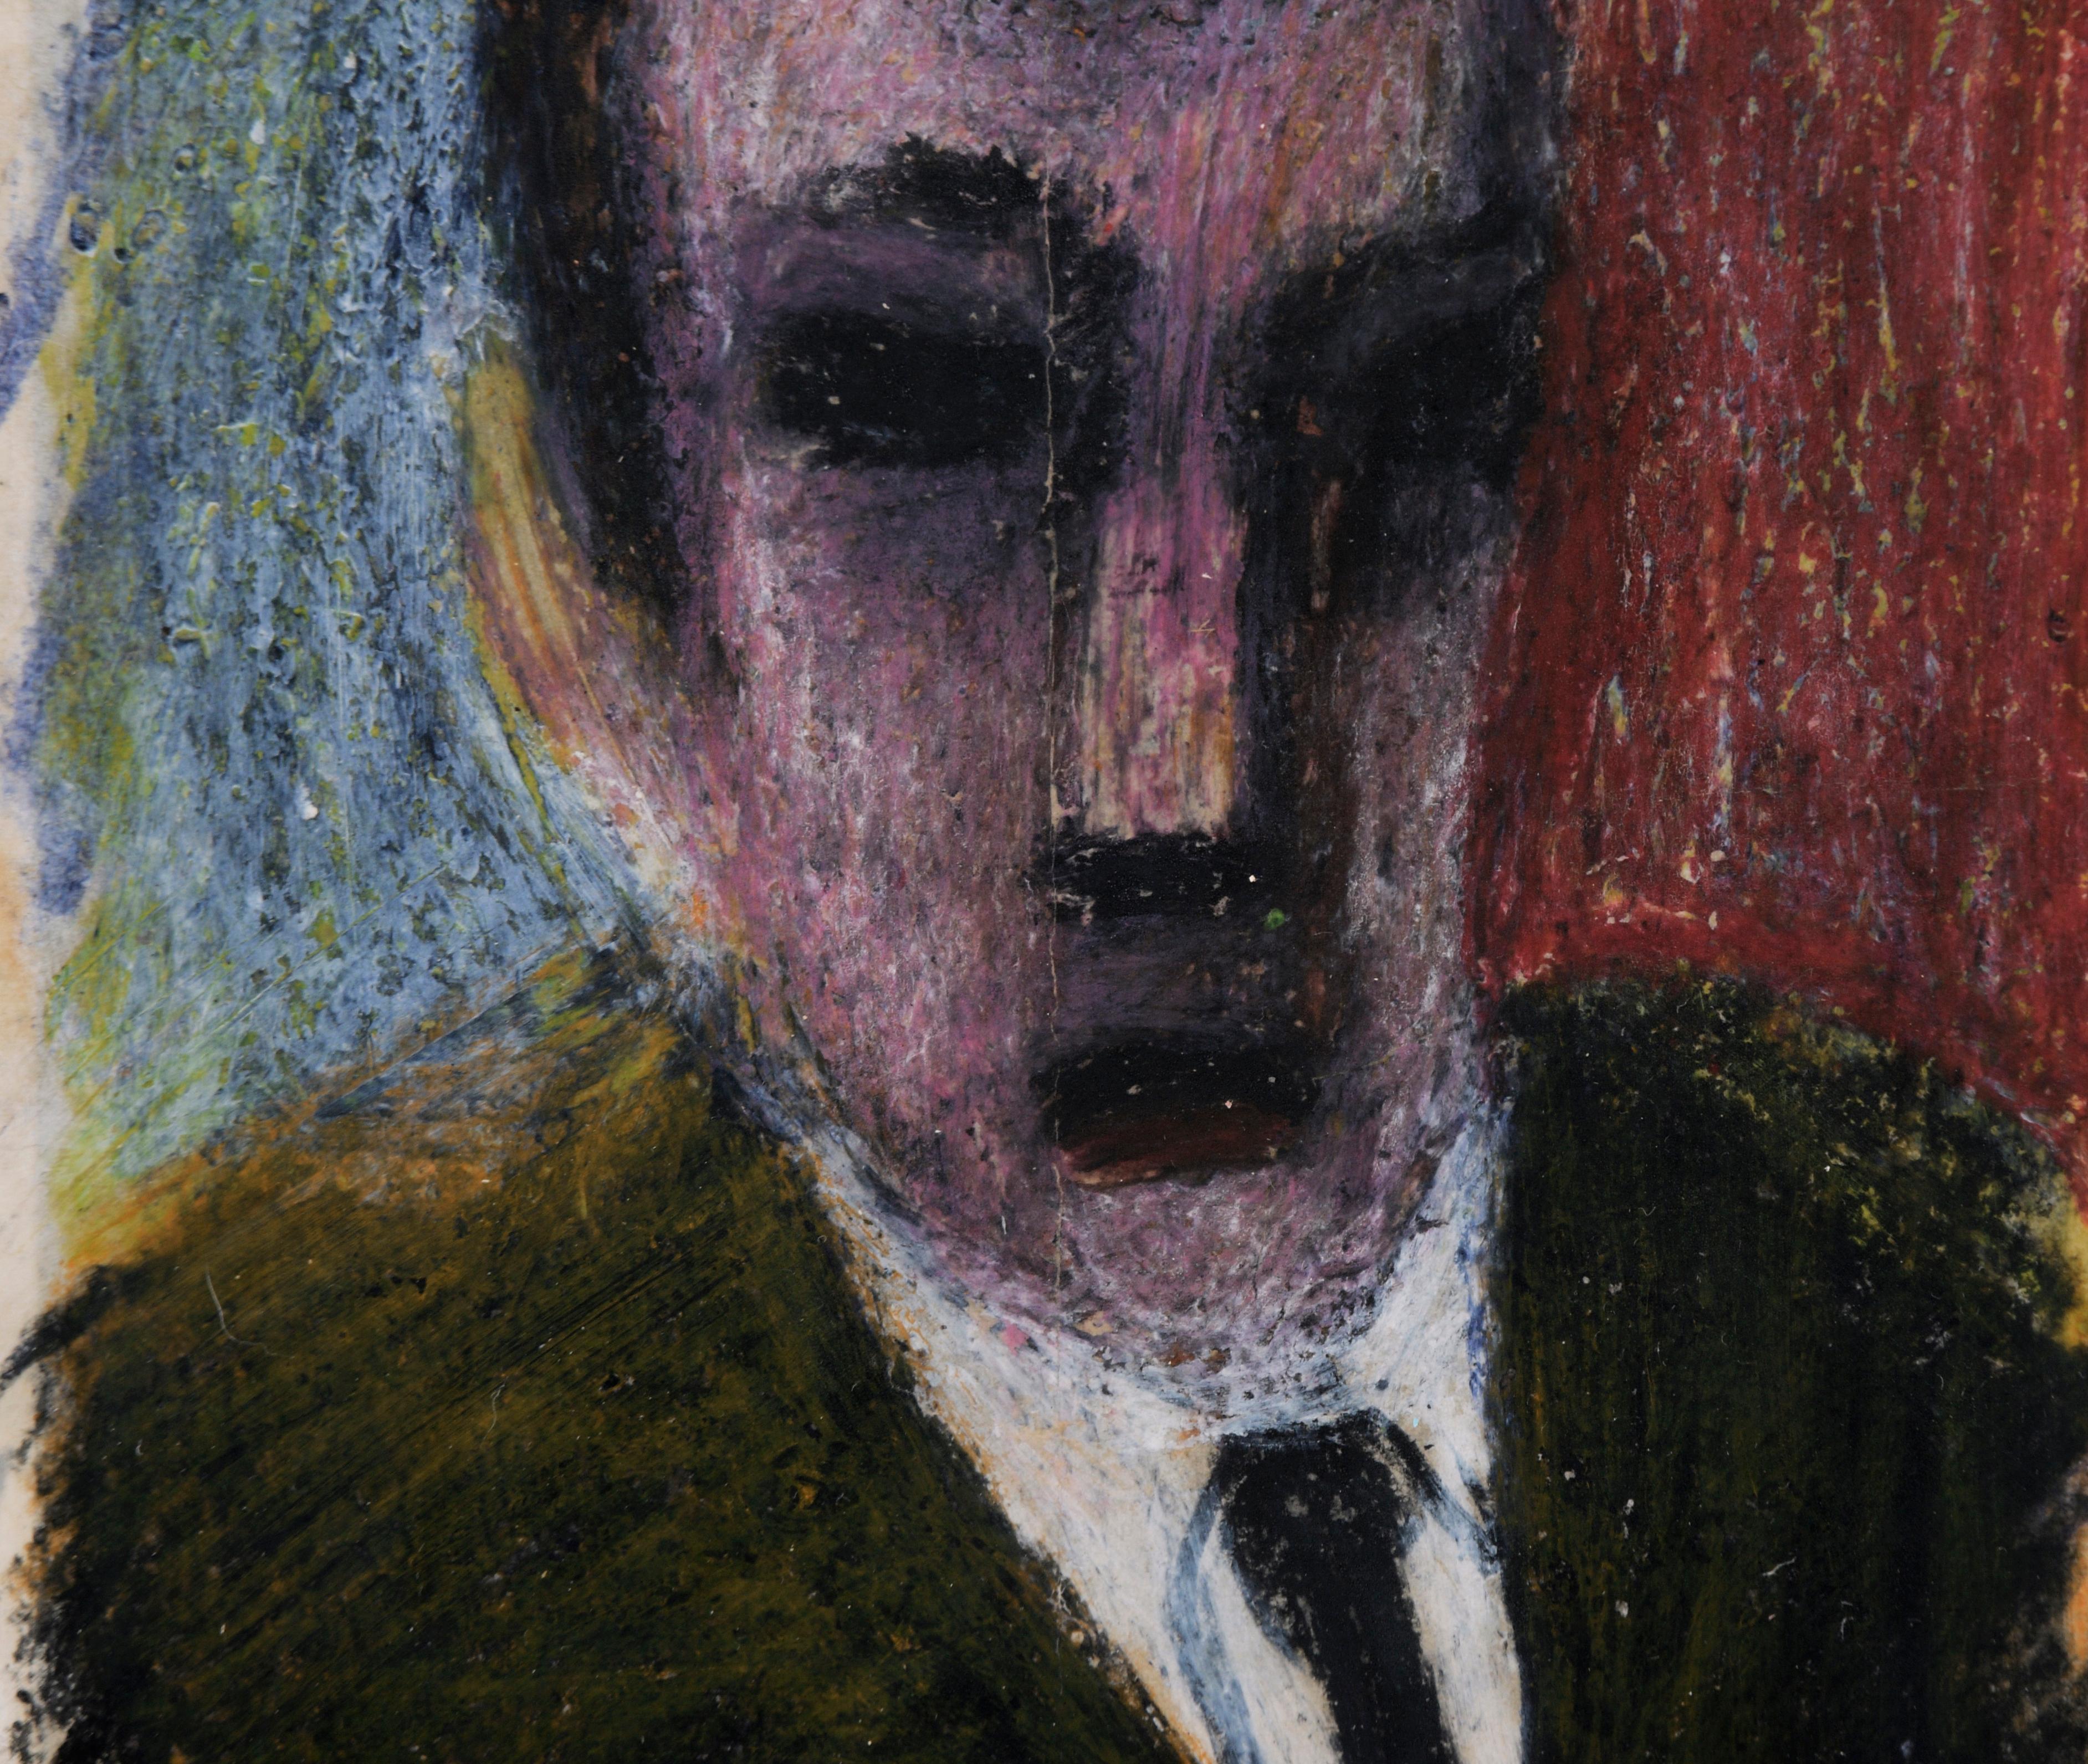 Expressionistisches Porträt eines Mannes im Anzug in Pastell auf Papier

Stimmungsvolles Porträt eines Mannes mit dunklem Haar von einem unbekannten Künstler (20. Jahrhundert). Der Mann ist mit einem länglichen Gesicht und dunklen, tiefliegenden